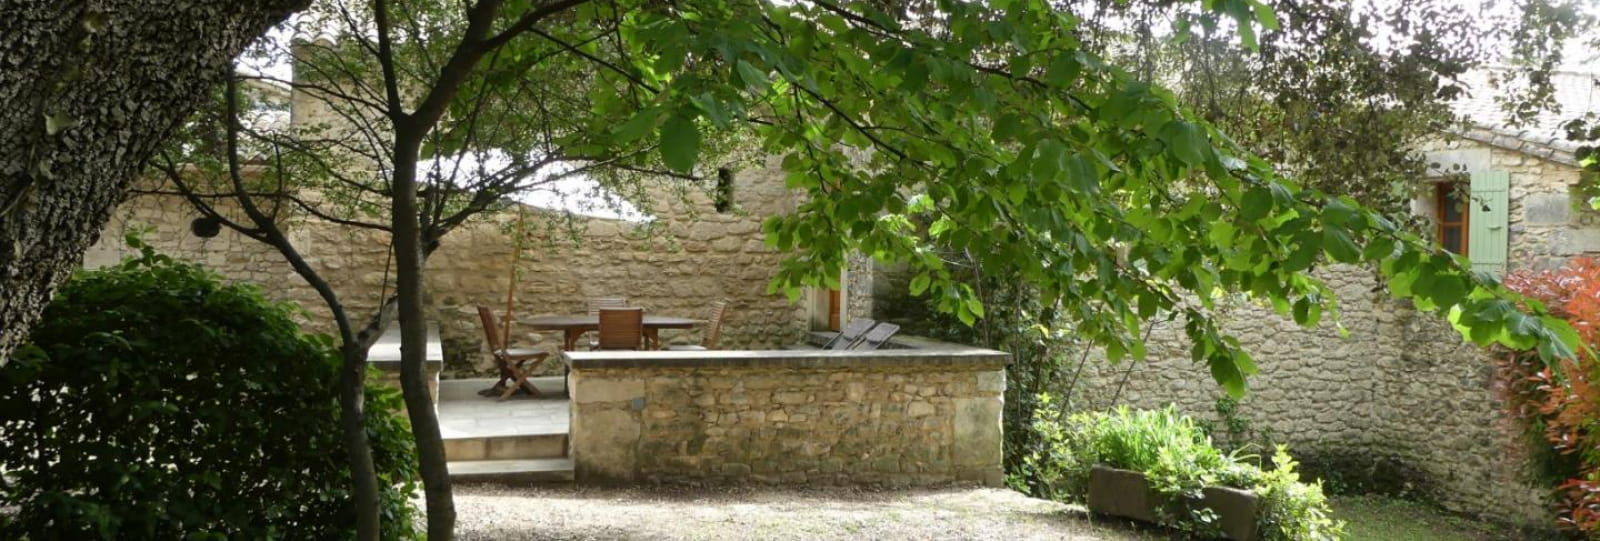 terrasse bois ombragée et terrasse en pierre ensoleillée à l'entrée du gîte